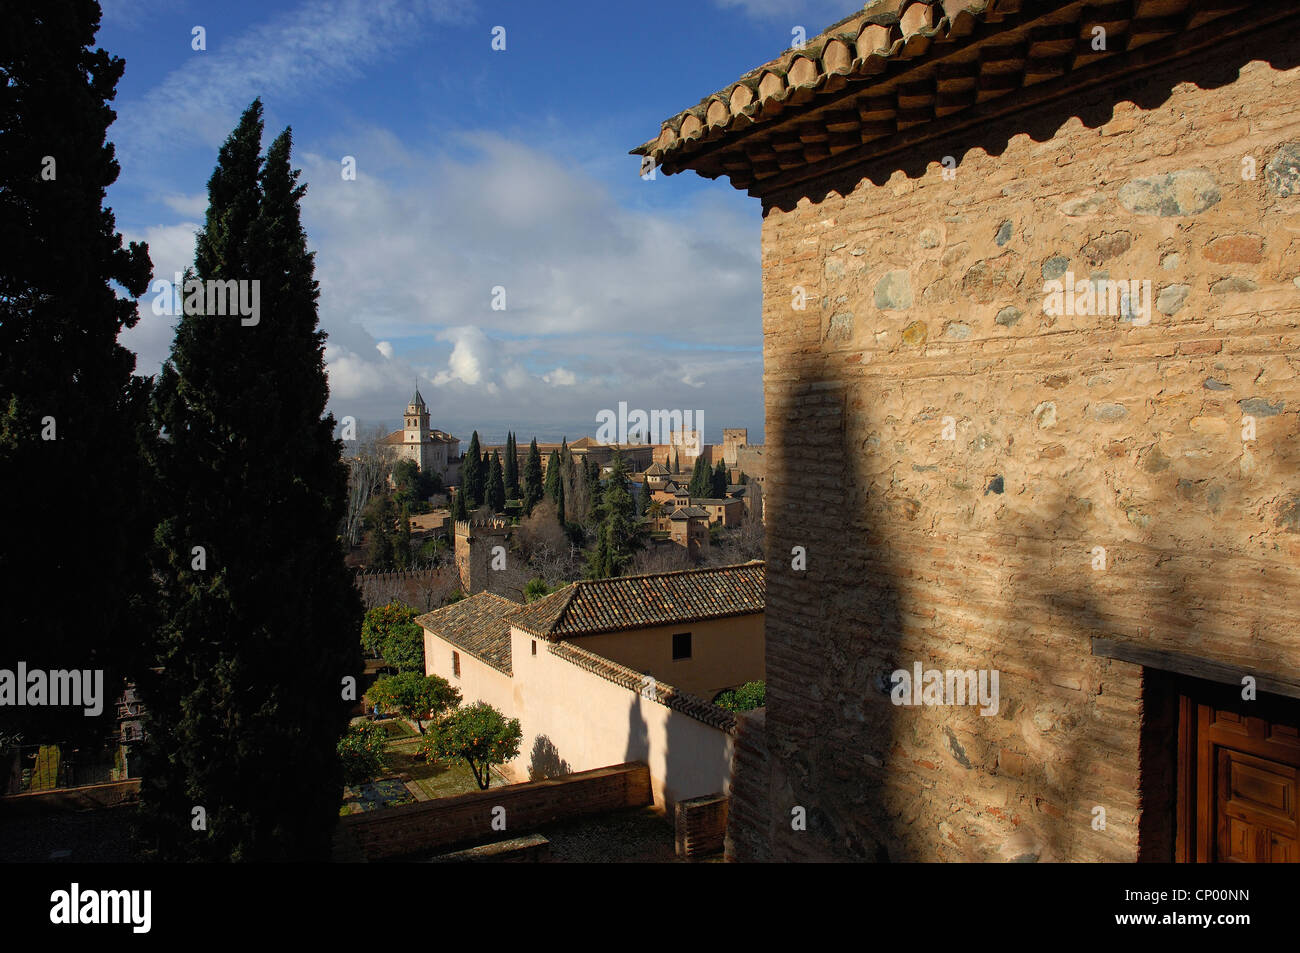 Dettaglio dall'Alcazaba o la cittadella dell'Alhambra Palace, Granada, Spagna Foto Stock